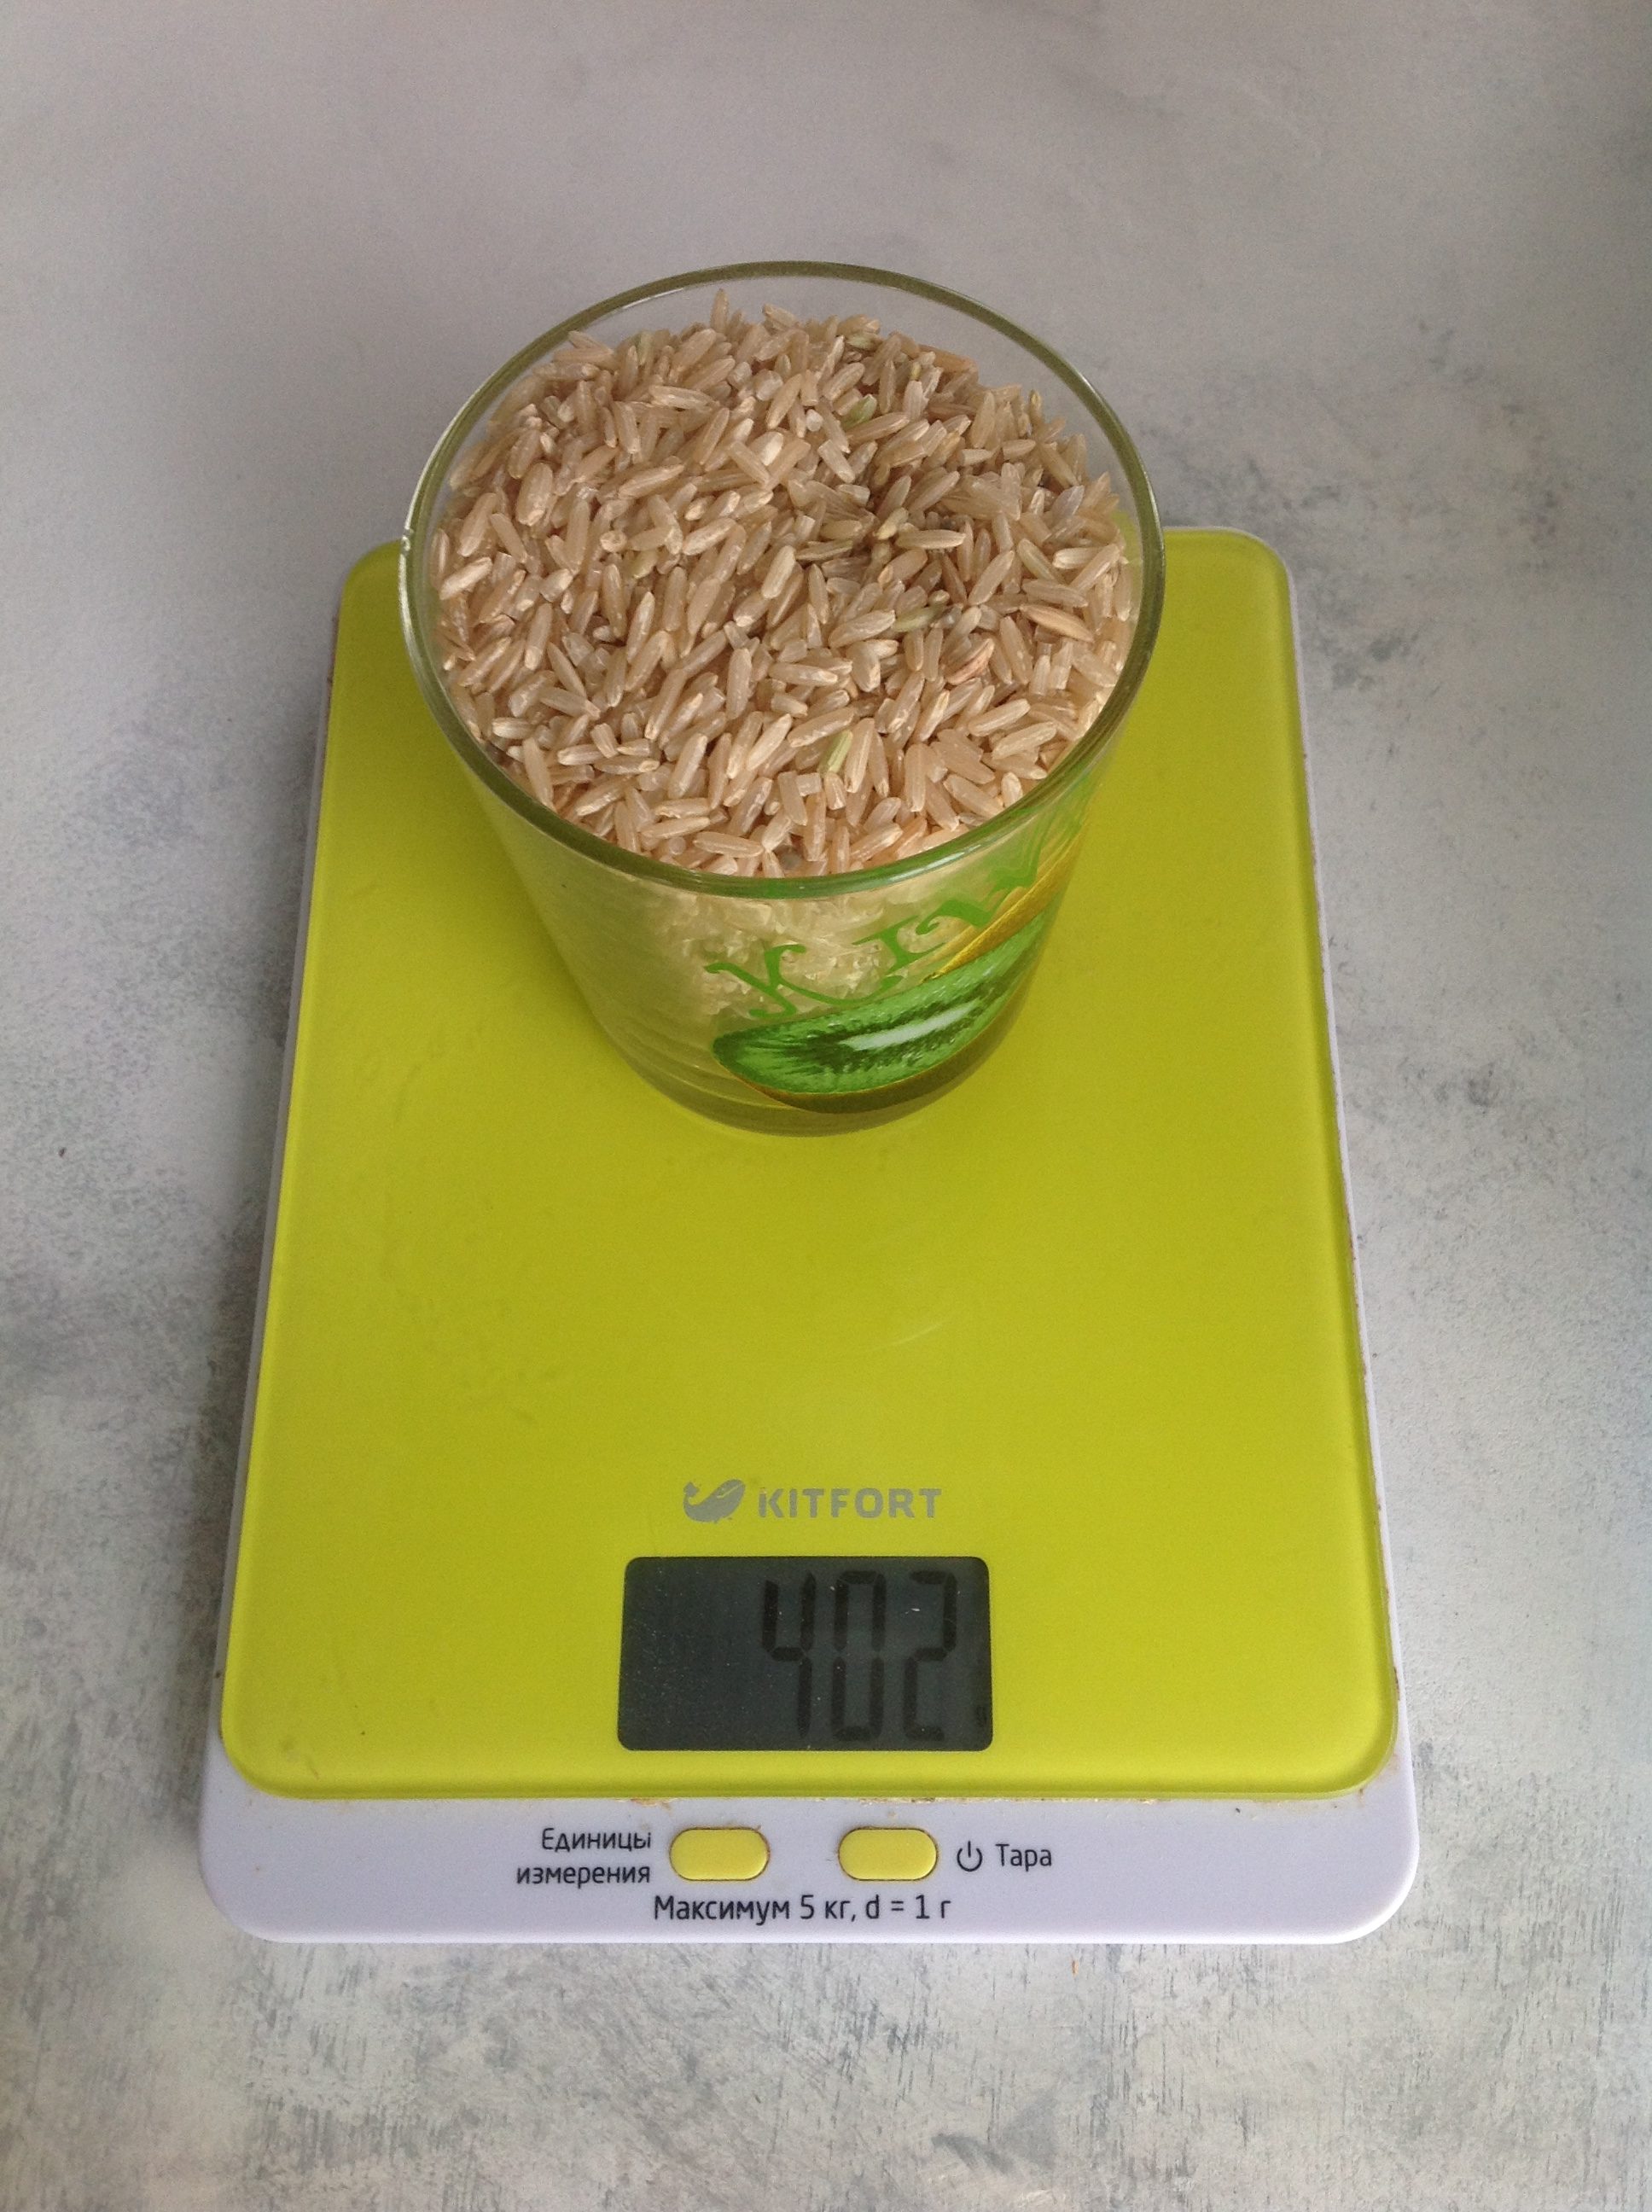 250 毫升玻璃杯中的糙米有多重？